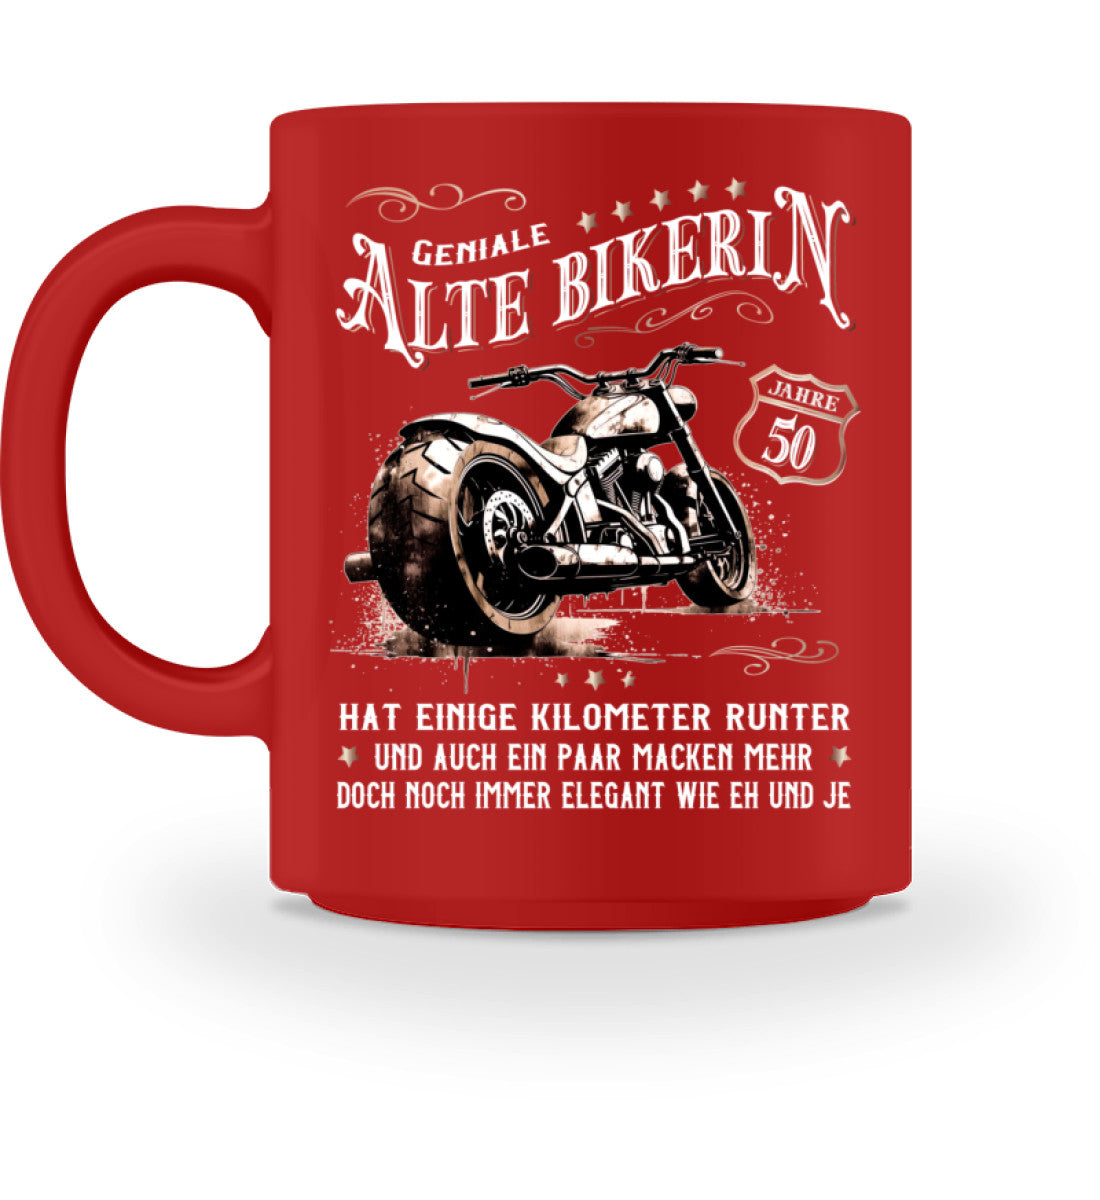 Eine Bikerin Geburtstags-Tasse für Motorradfahrerinnen, von Wingbikers, mit dem beidseitigen Aufdruck, Alte Bikerin - 50 Jahre - Einige Kilometer Runter - Doch elegant wie eh und je, in rot.